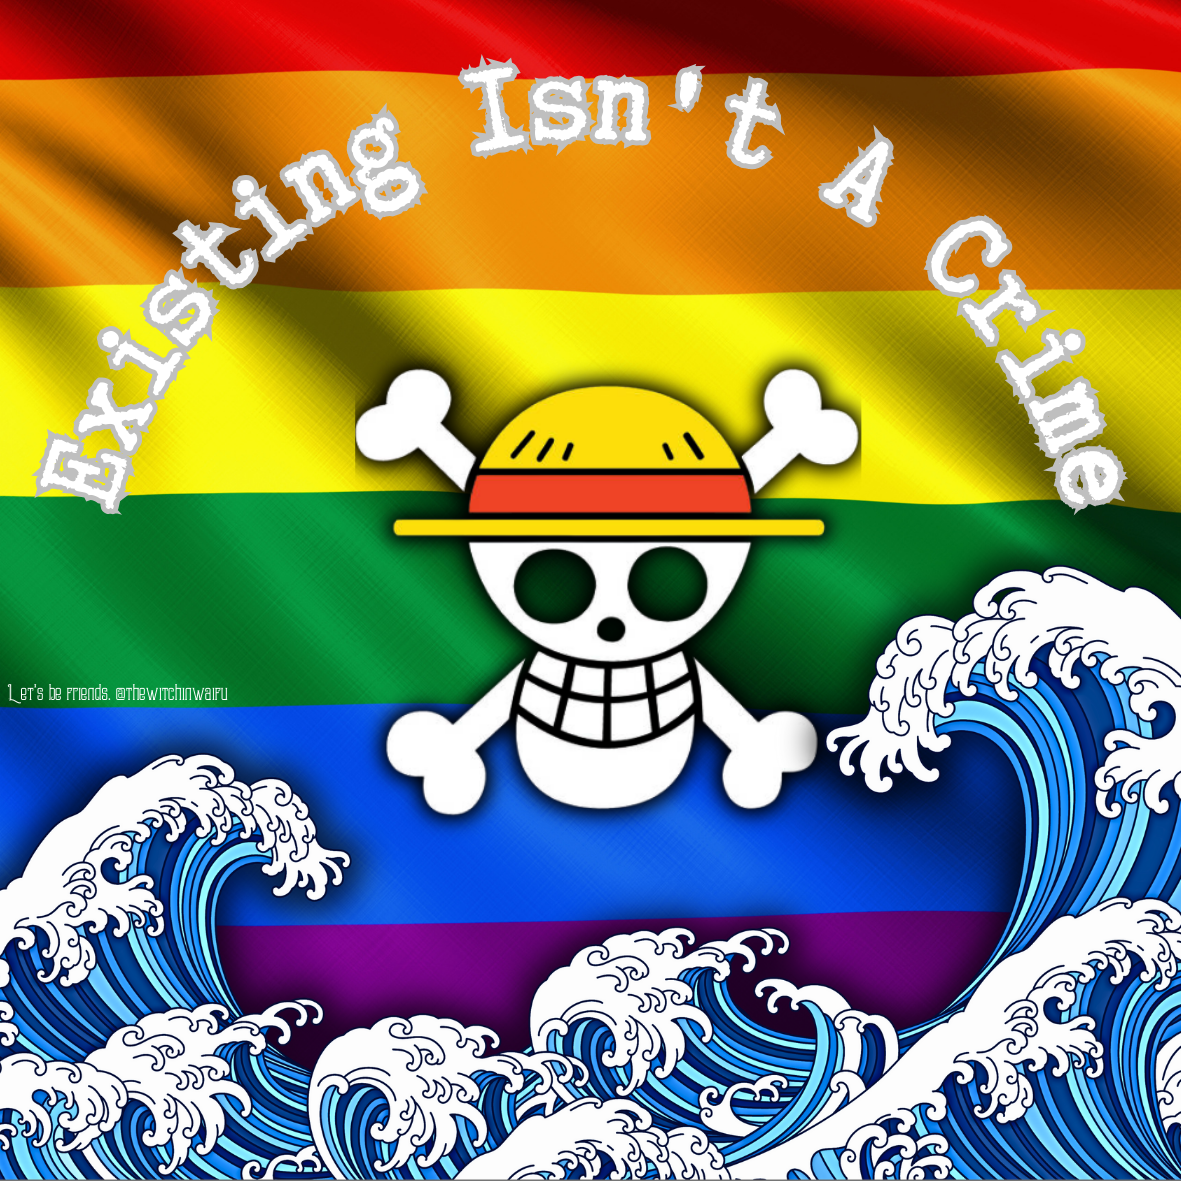 One Piece Pride sticker- Preorder